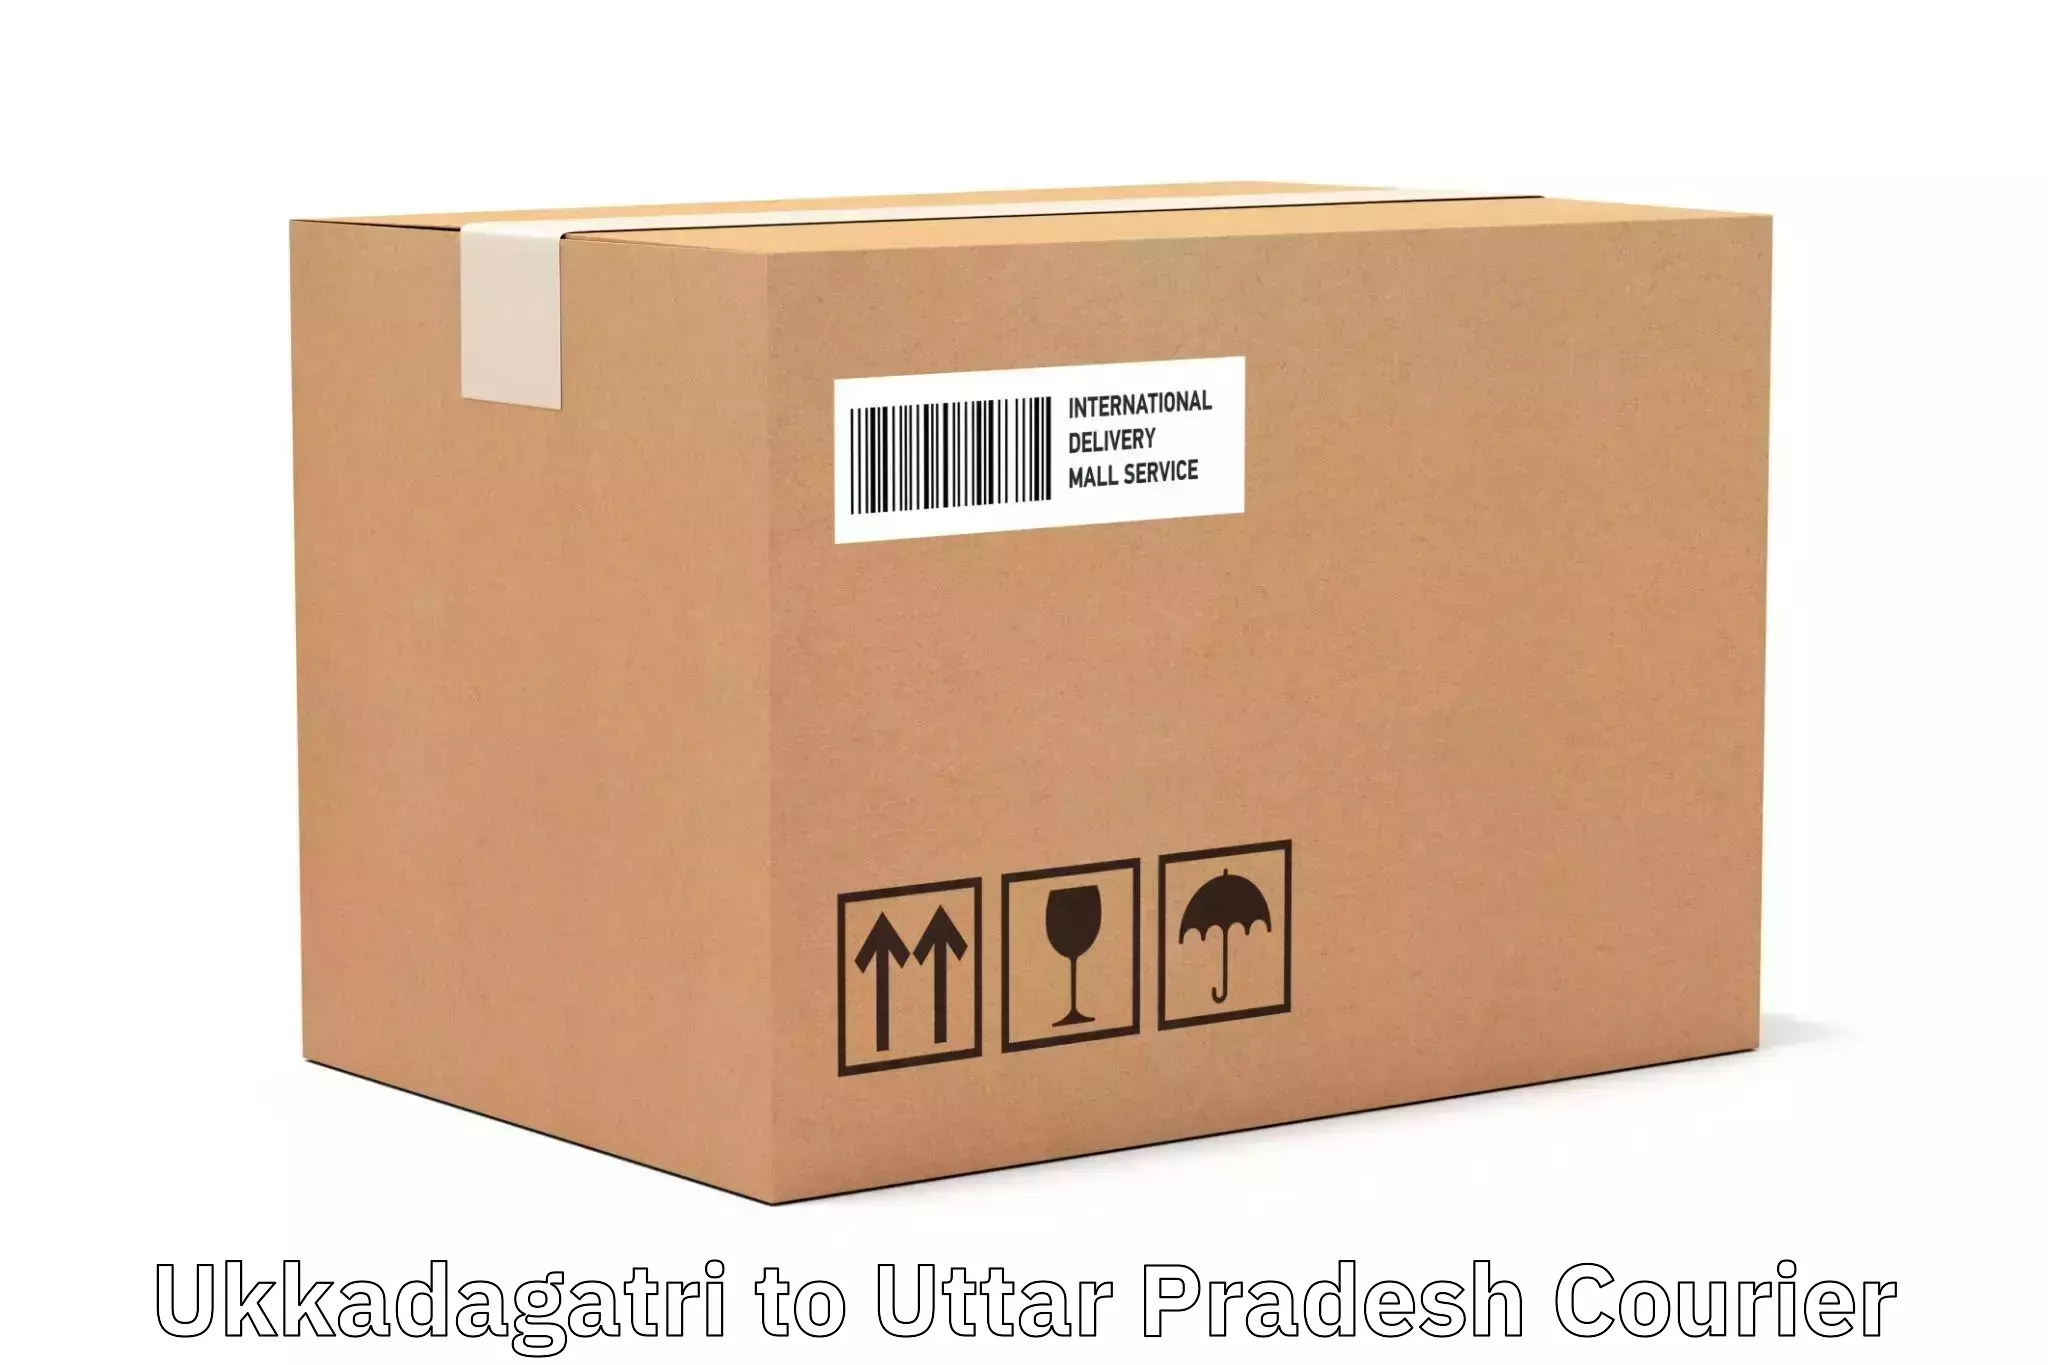 Express package handling Ukkadagatri to Baberu